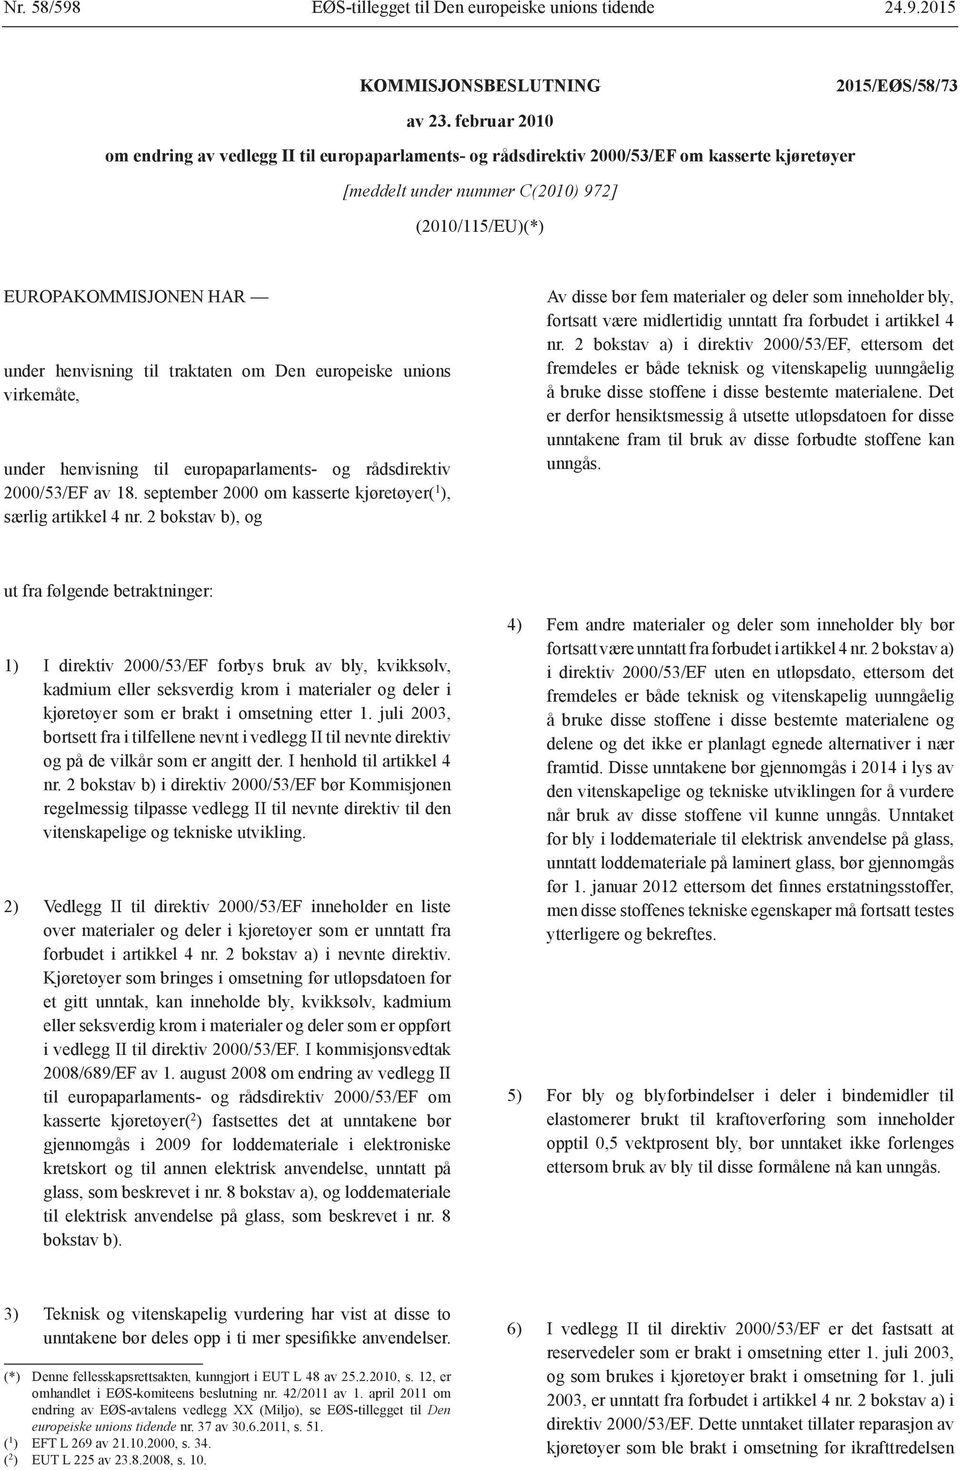 henvisning til traktaten om Den europeiske unions virkemåte, under henvisning til europaparlaments- og rådsdirektiv 2000/53/EF av 18. september 2000 om kasserte kjøretøyer( 1 ), særlig artikkel 4 nr.